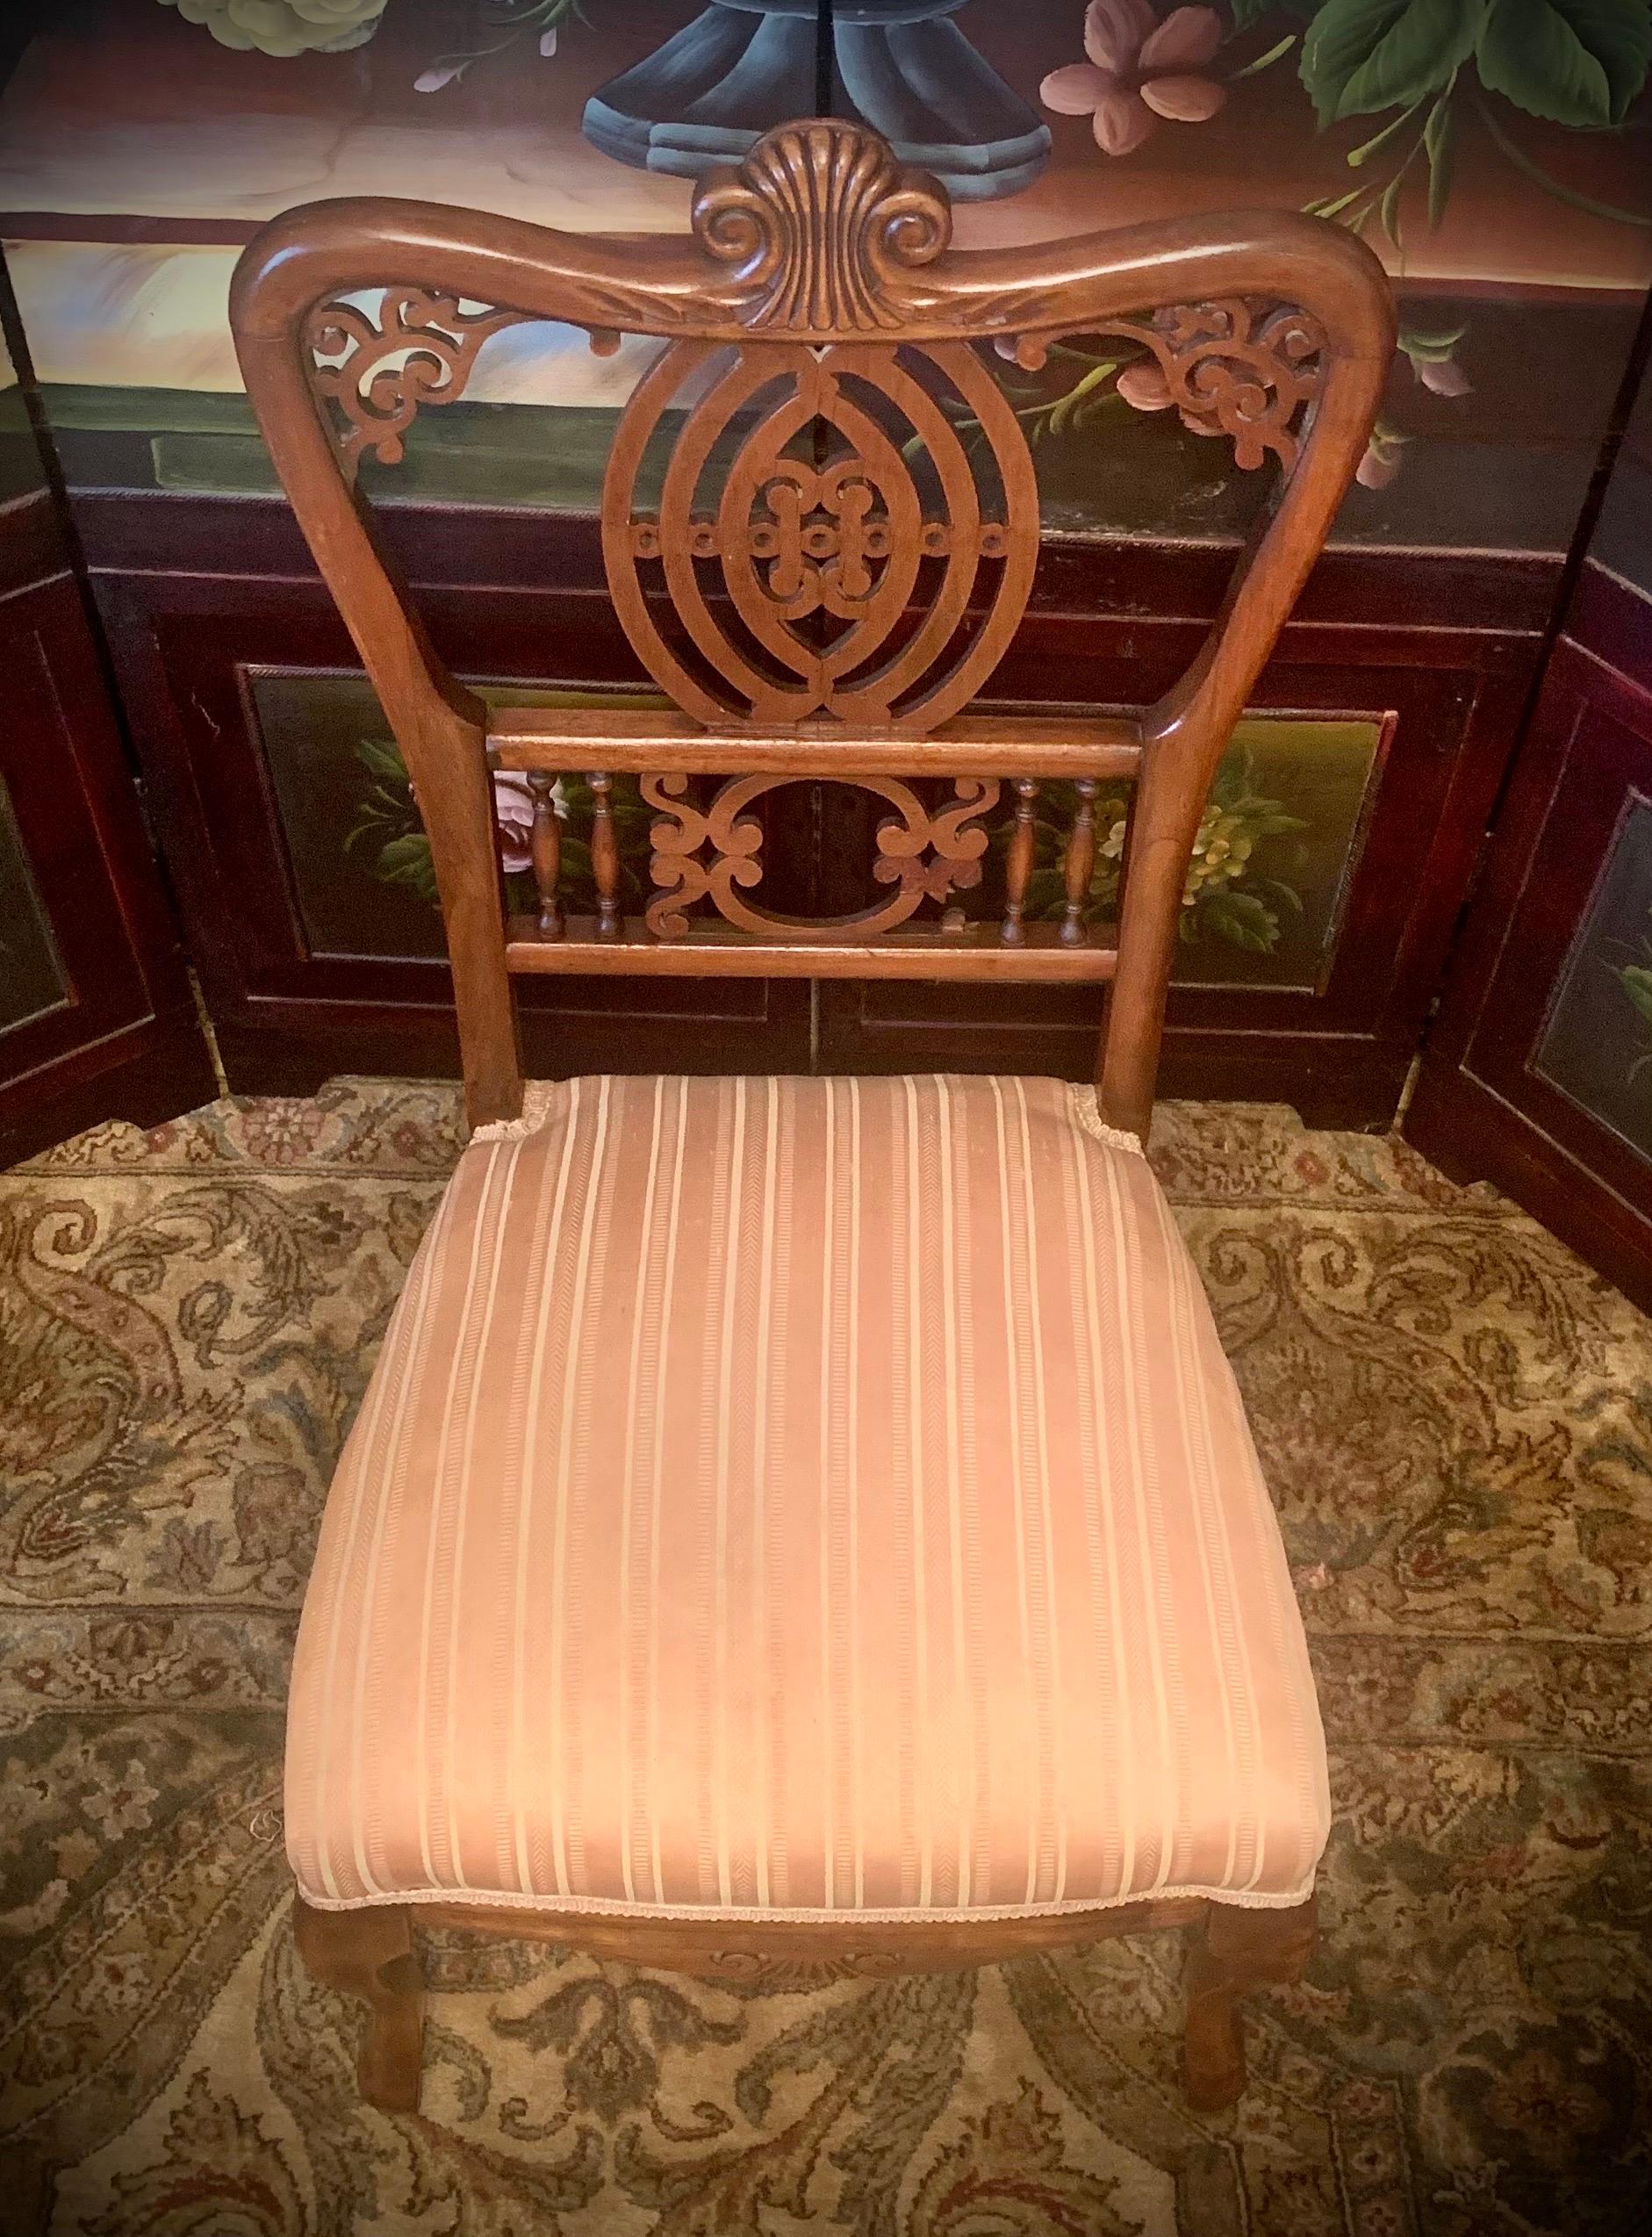 Circa 1890-1910, cette ancienne chaise à pantoufles victorienne est de fabrication américaine et construite en acajou massif et lisse, avec des détails de plans de bois ornementés, des fuseaux façonnés au tour, des pieds cabriole et une assise